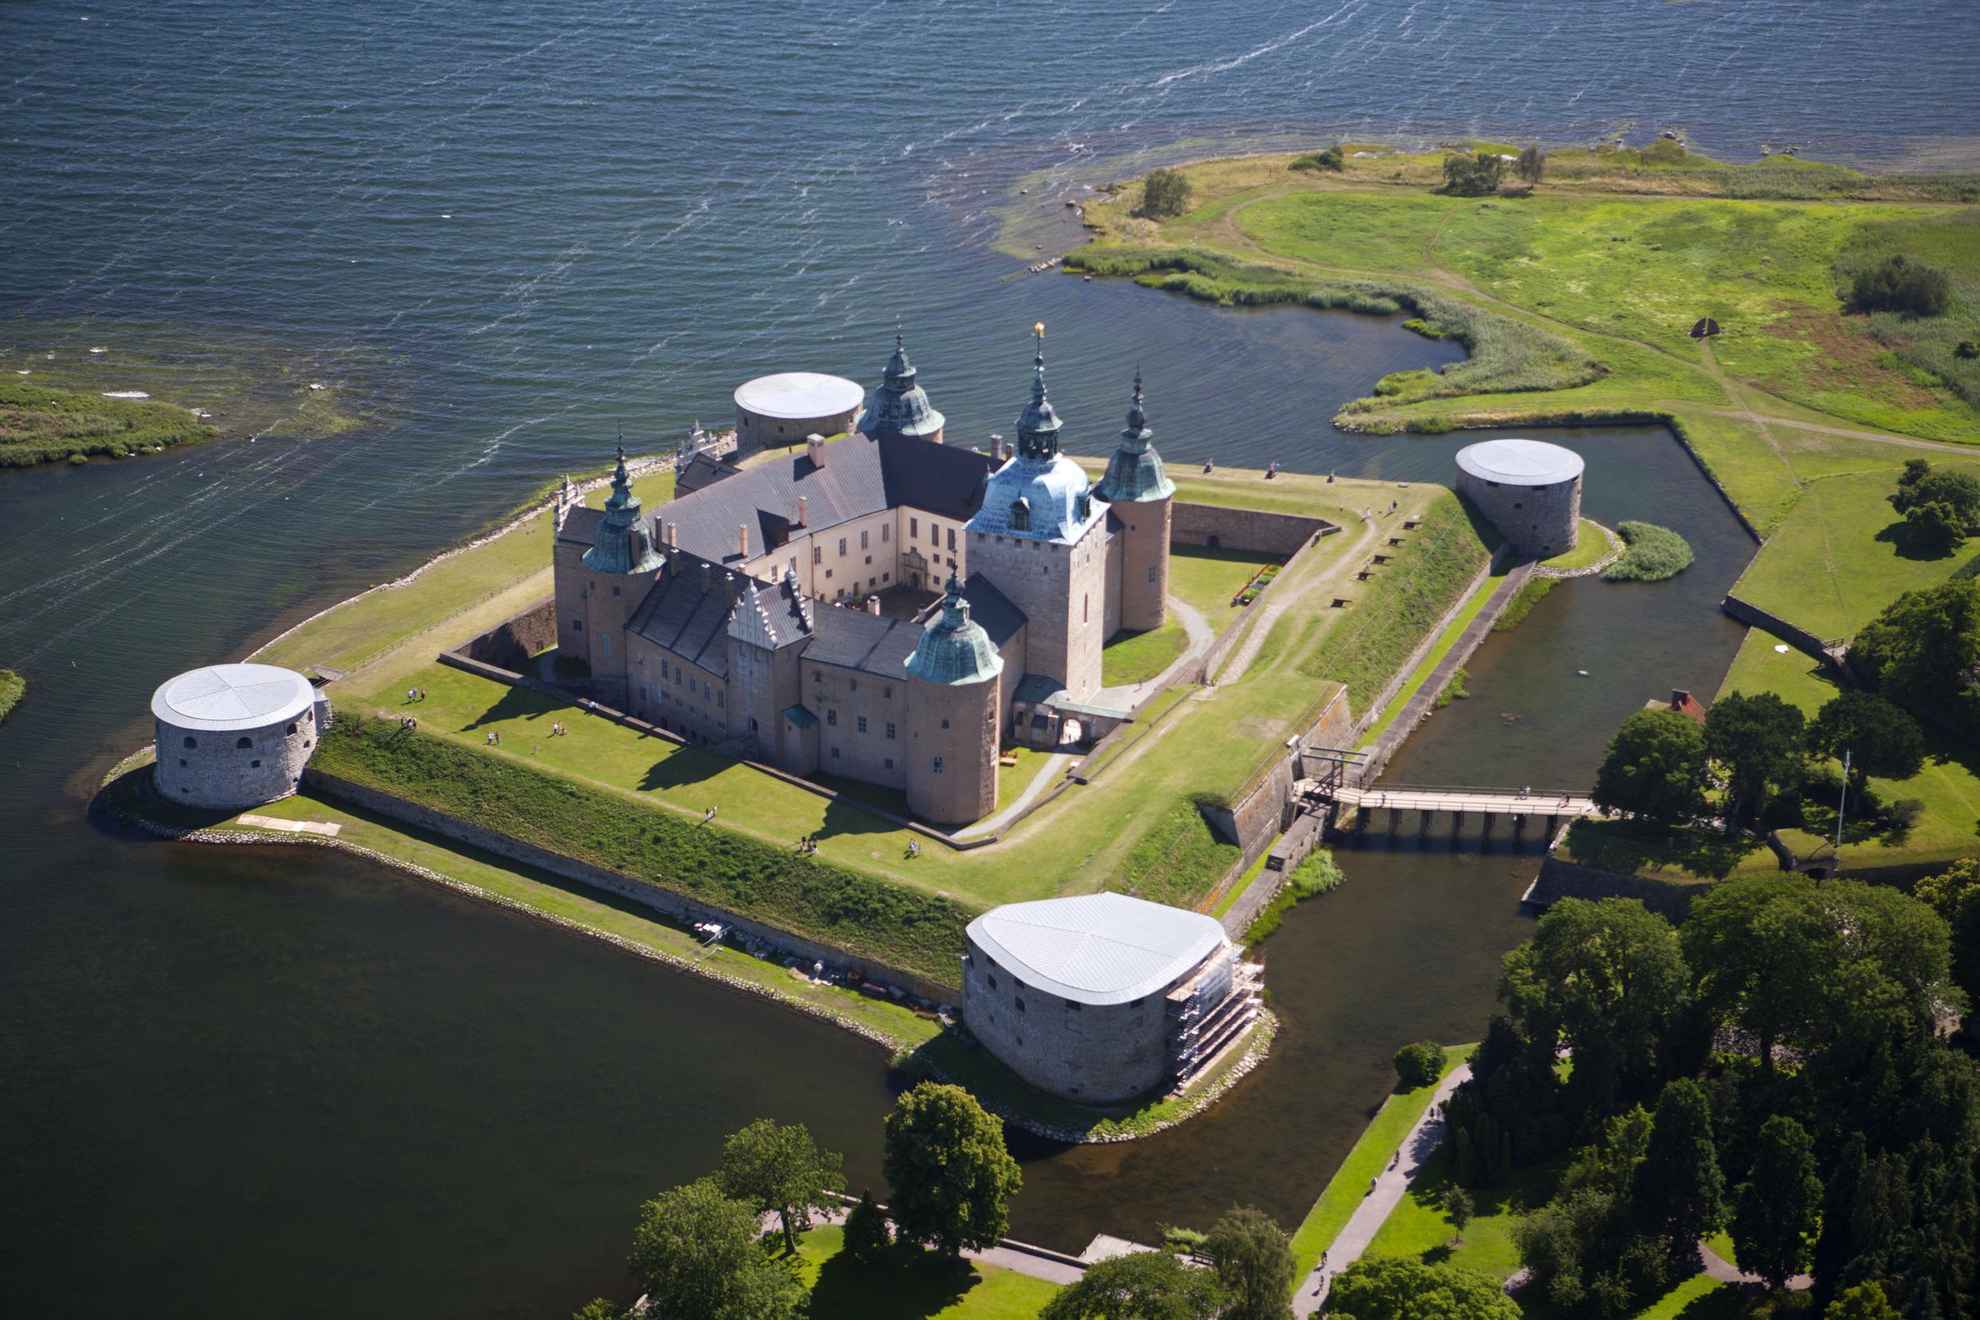 Luchtfoto van het kasteel van Kalmar, gelegen op een klein eiland omgeven door water met een kleine brug naar het vasteland.